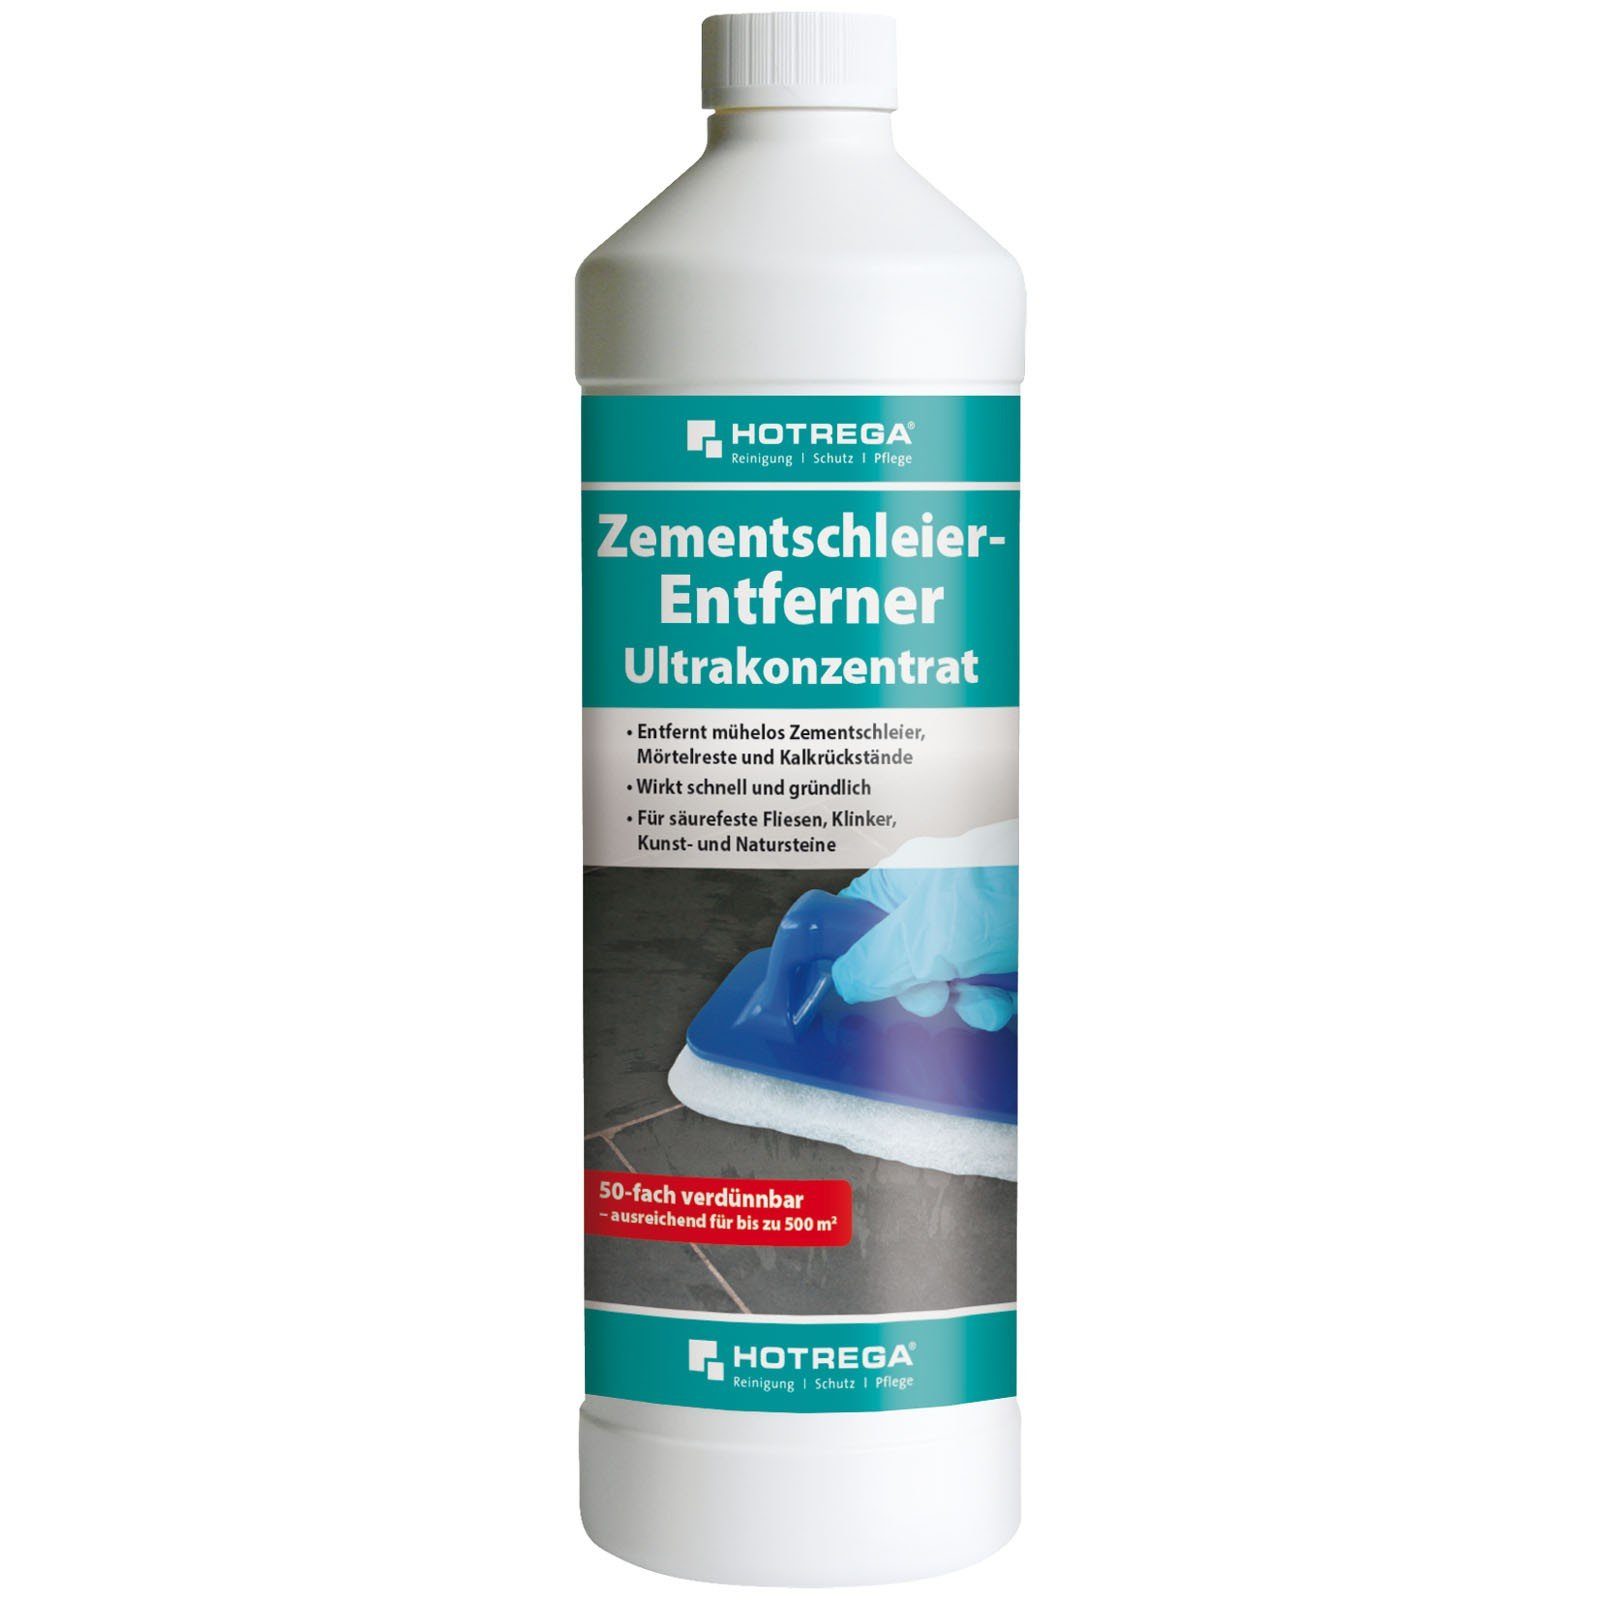 HOTREGA® Zementschleier Entferner Ultrakonzentrat 1 Liter Reinigungskonzentrat